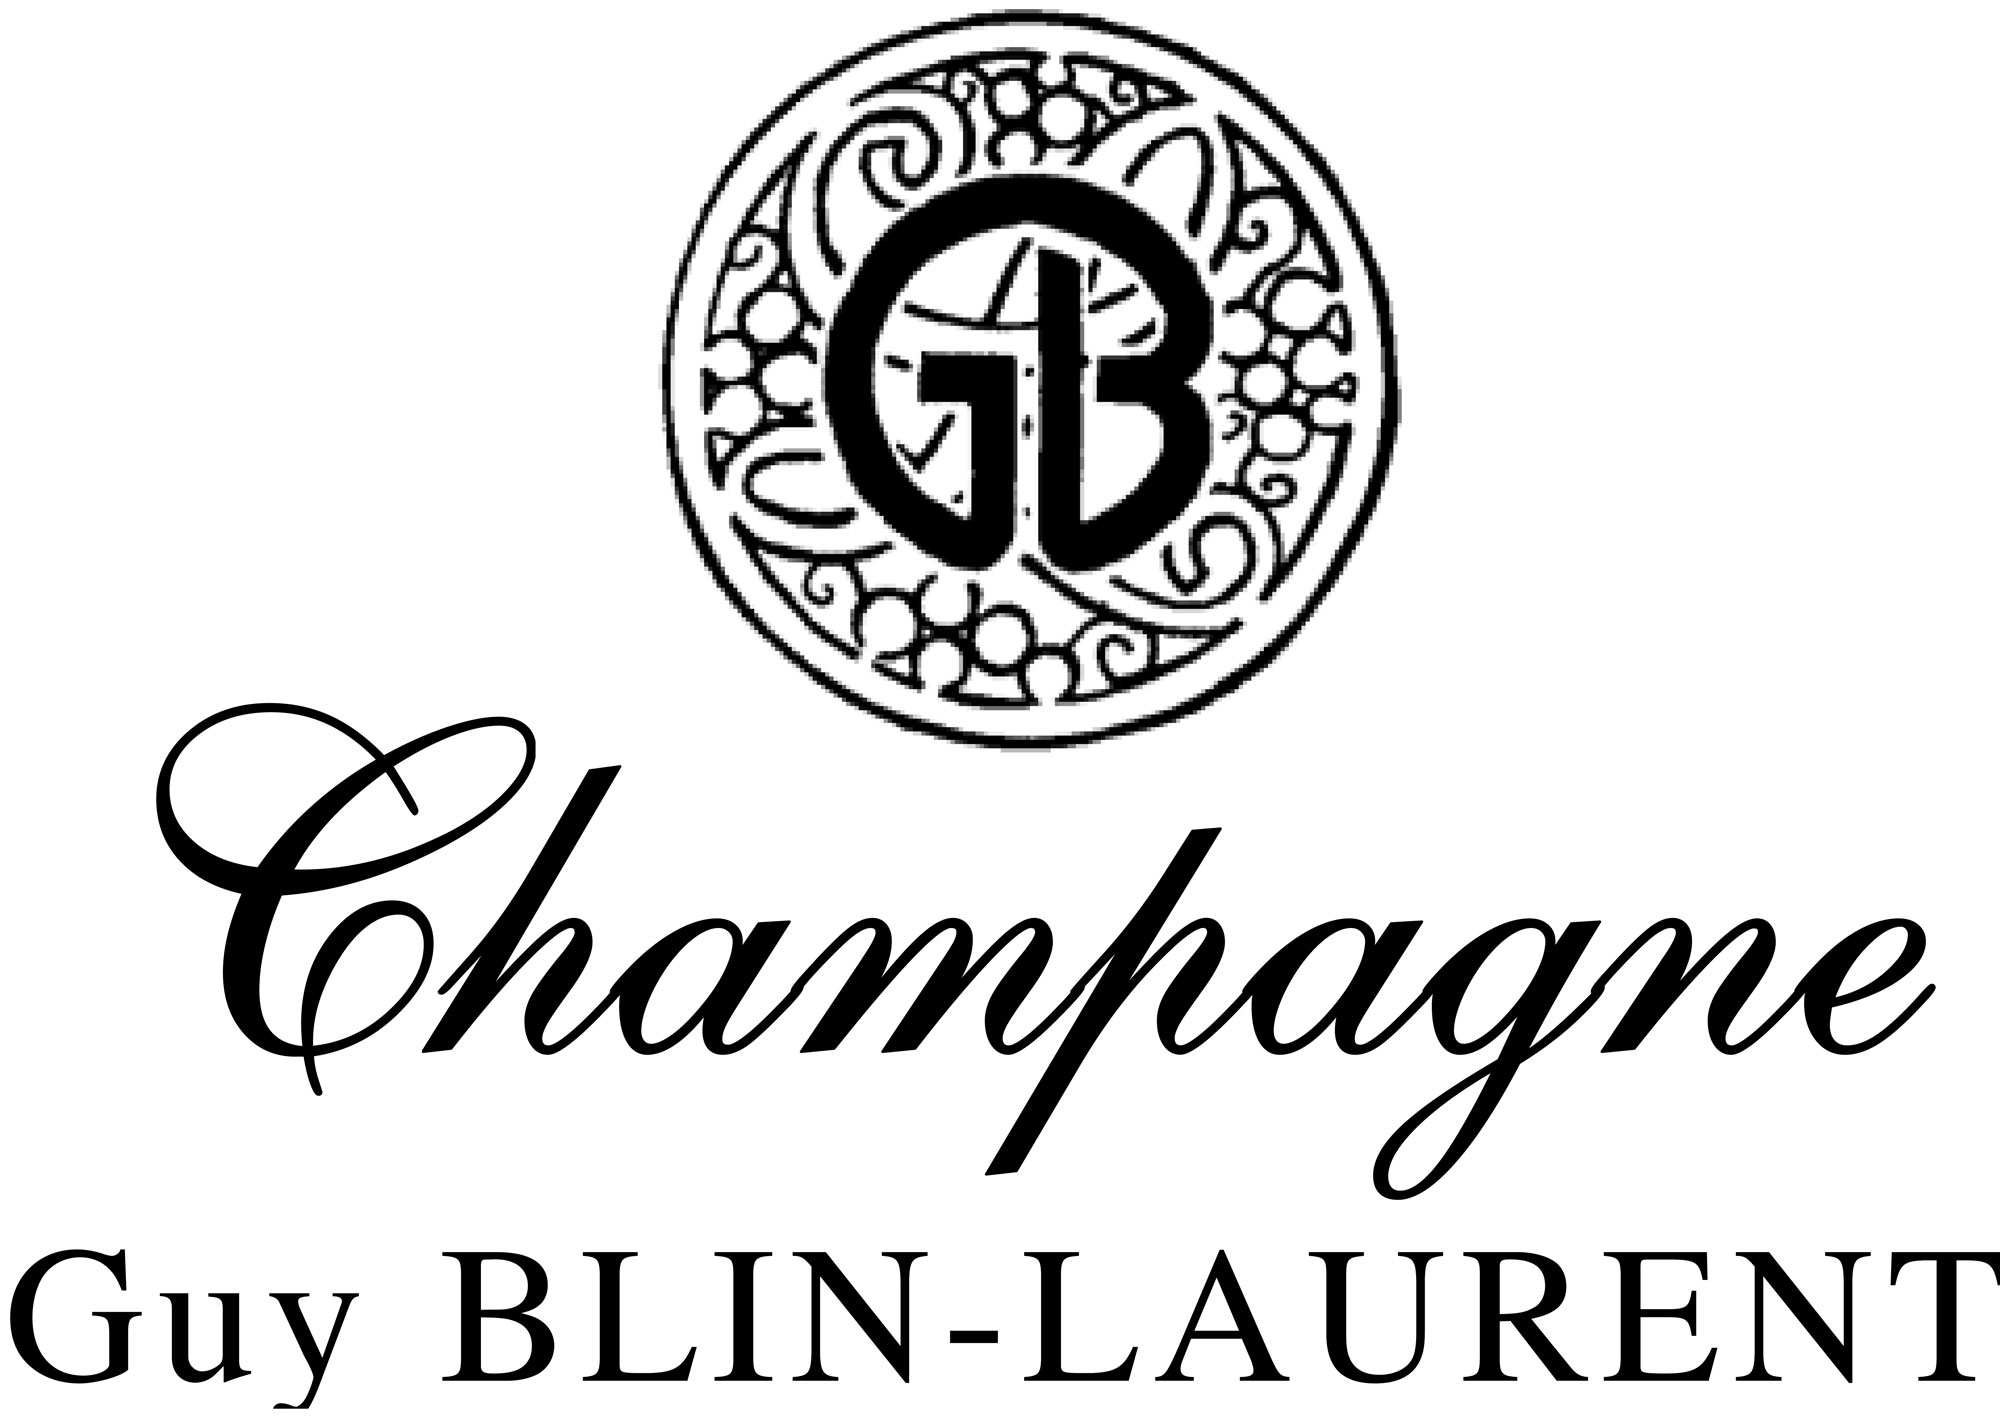 Champagne Guy Blin-Laurent